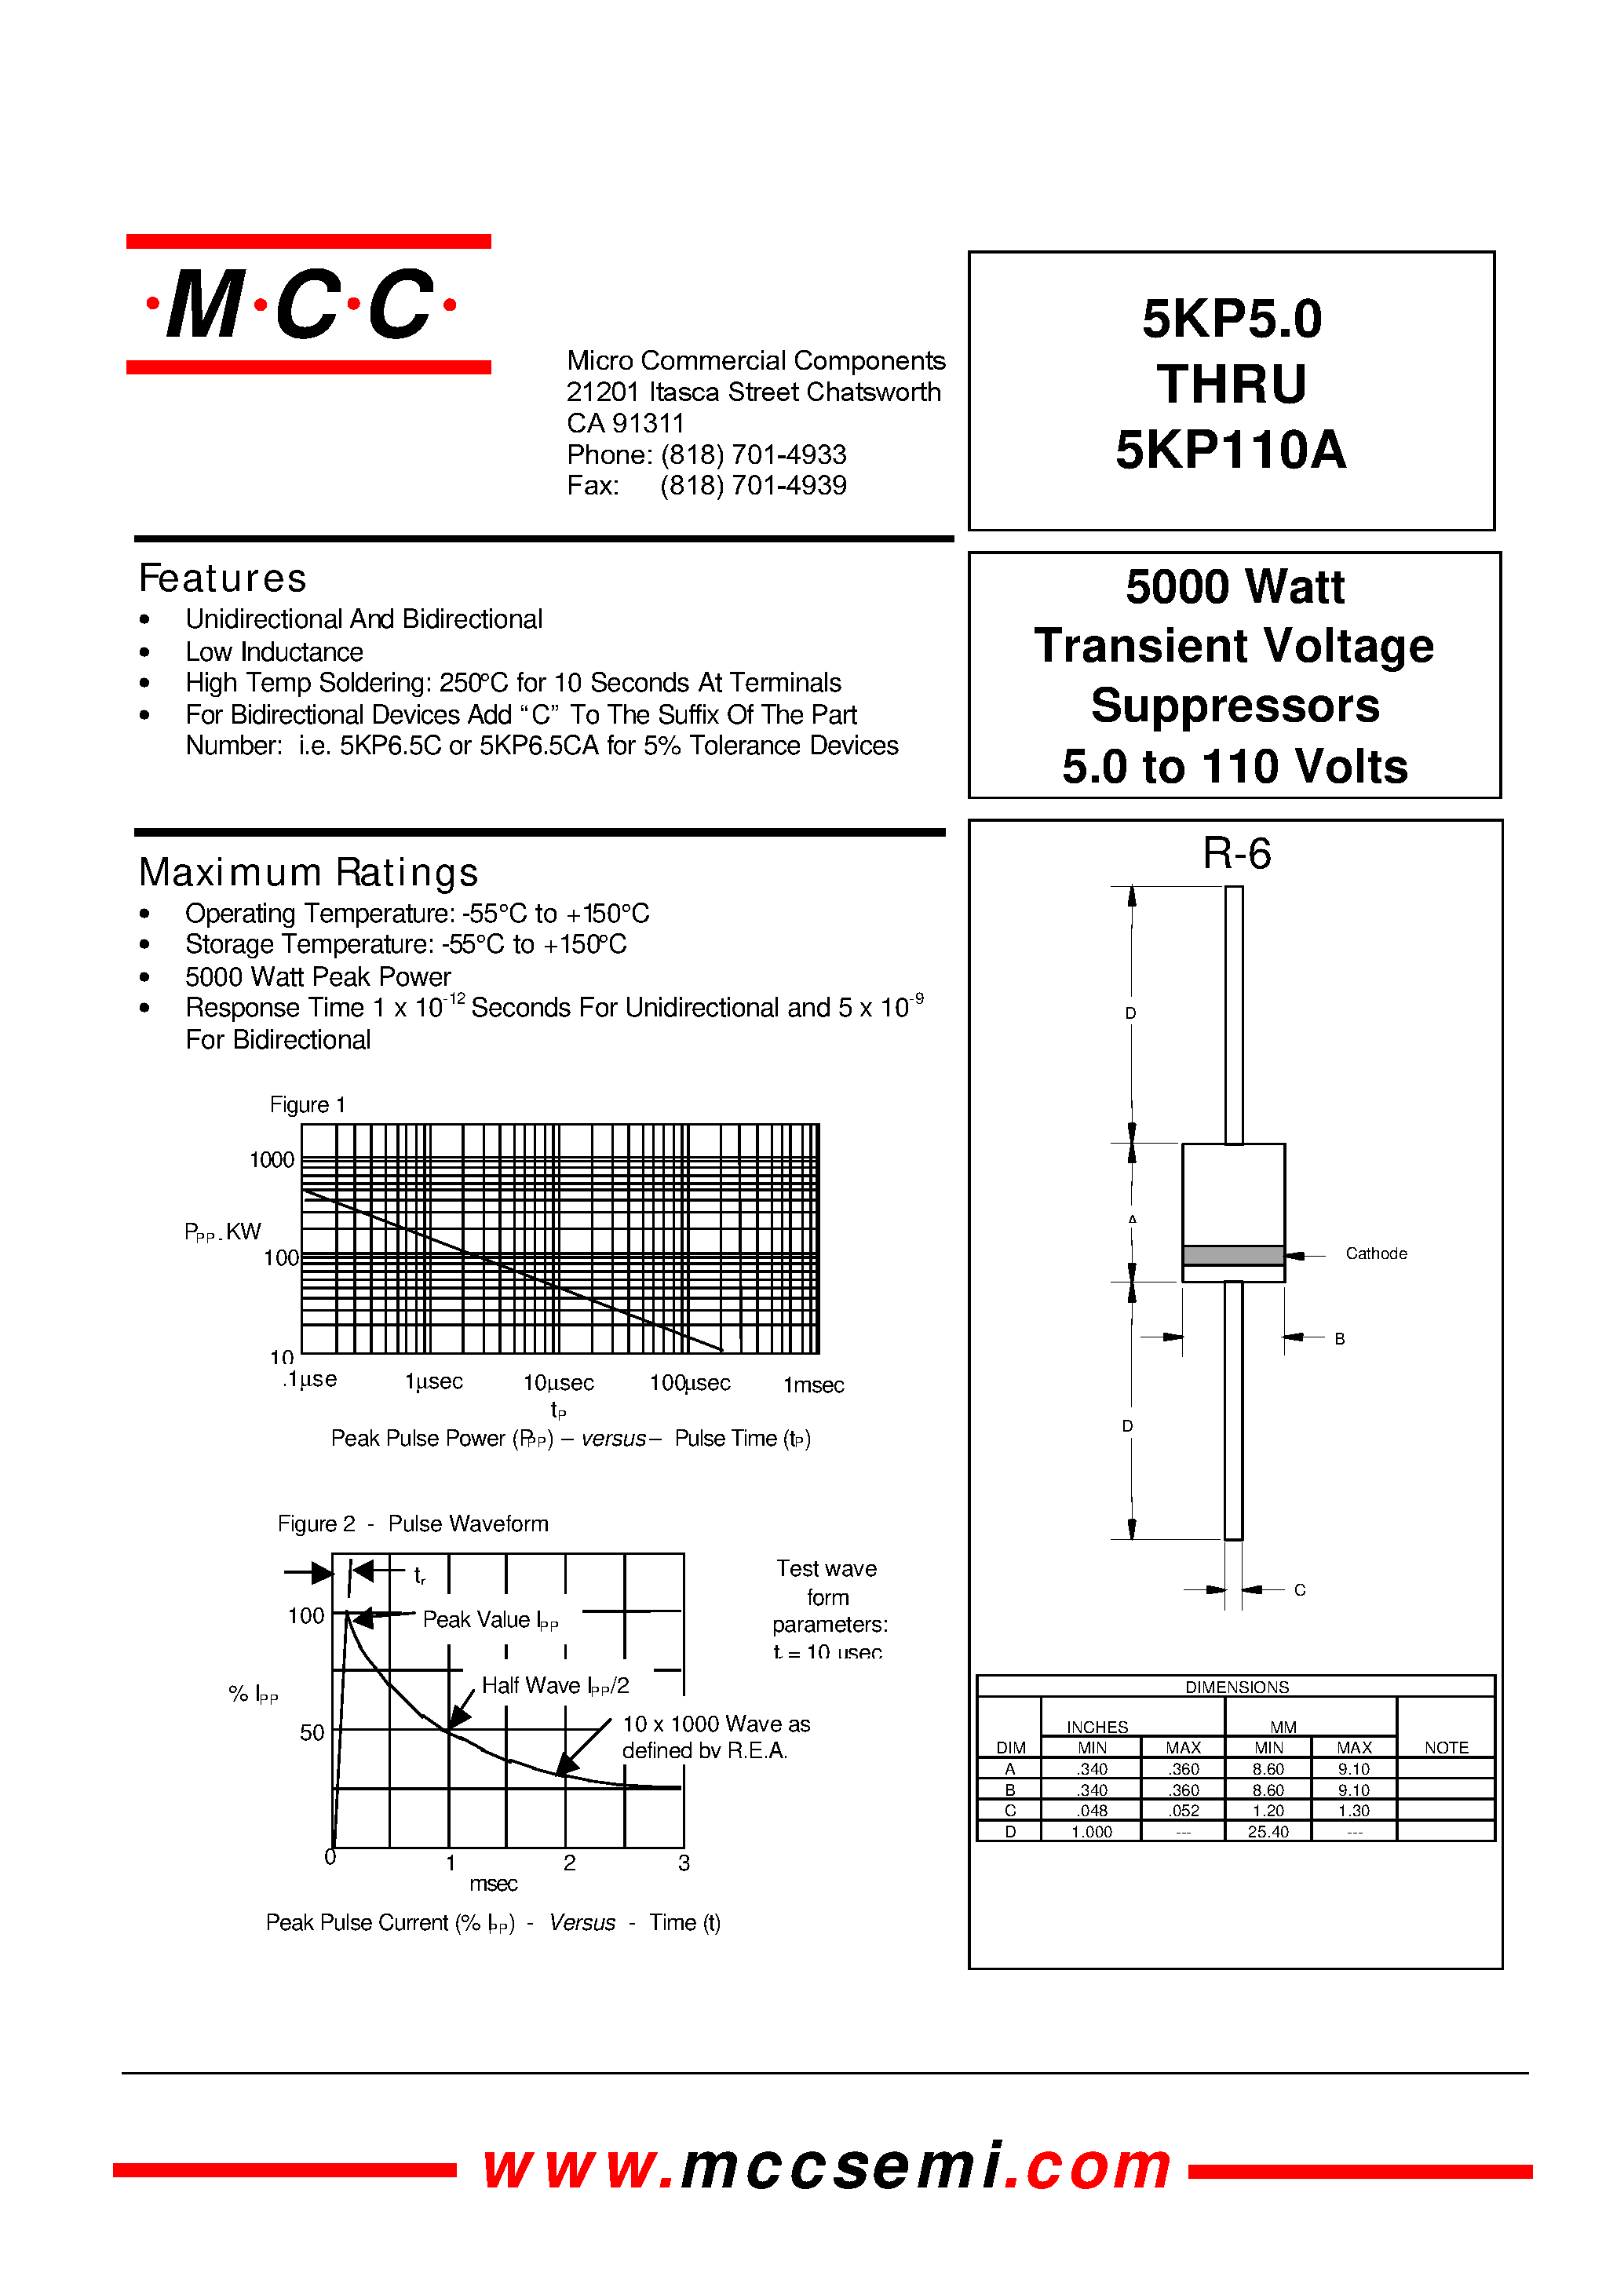 Datasheet 5KP6.5 - 5000 Watt Transient Voltage Suppressors 5.0 to 110 Volts page 1